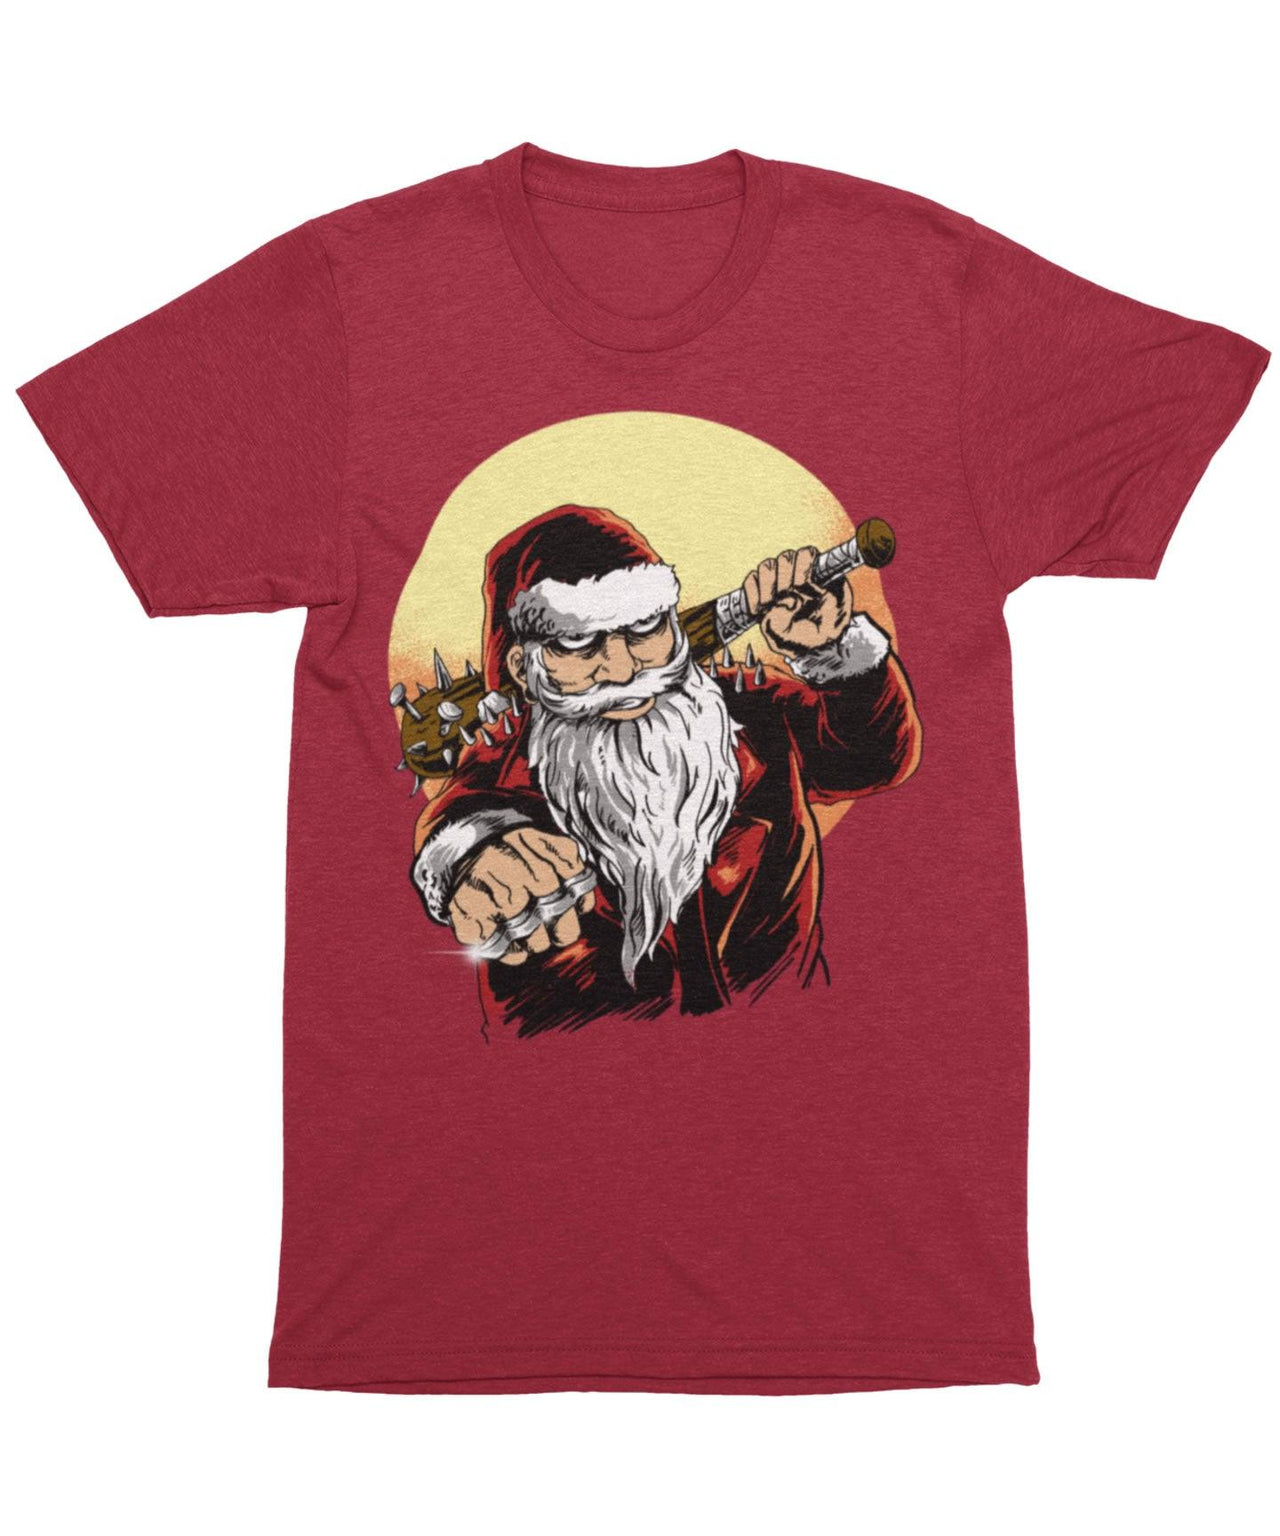 Bad Boy Santa Unisex Christmas Unisex T-Shirt For Men And Women 8Ball